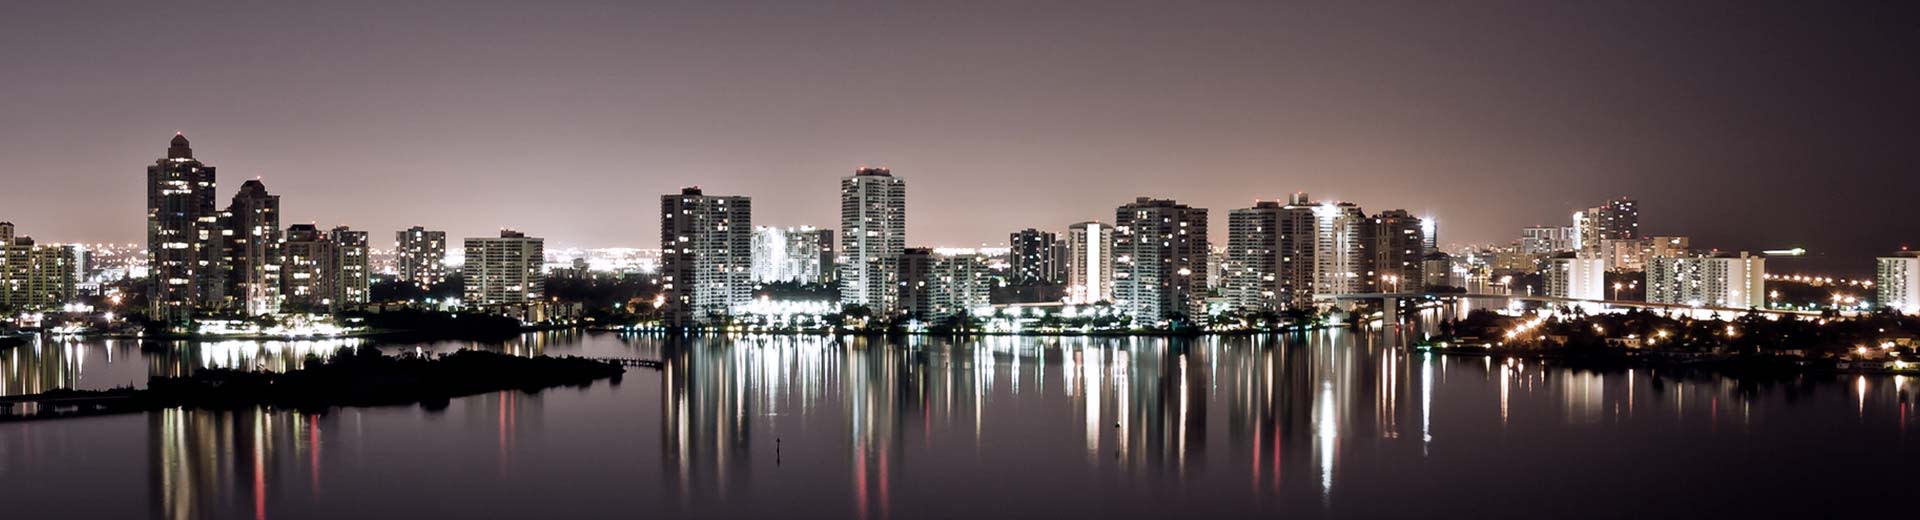 Por la noche, el horizonte de Fort Lauderdale ilumina el cielo.